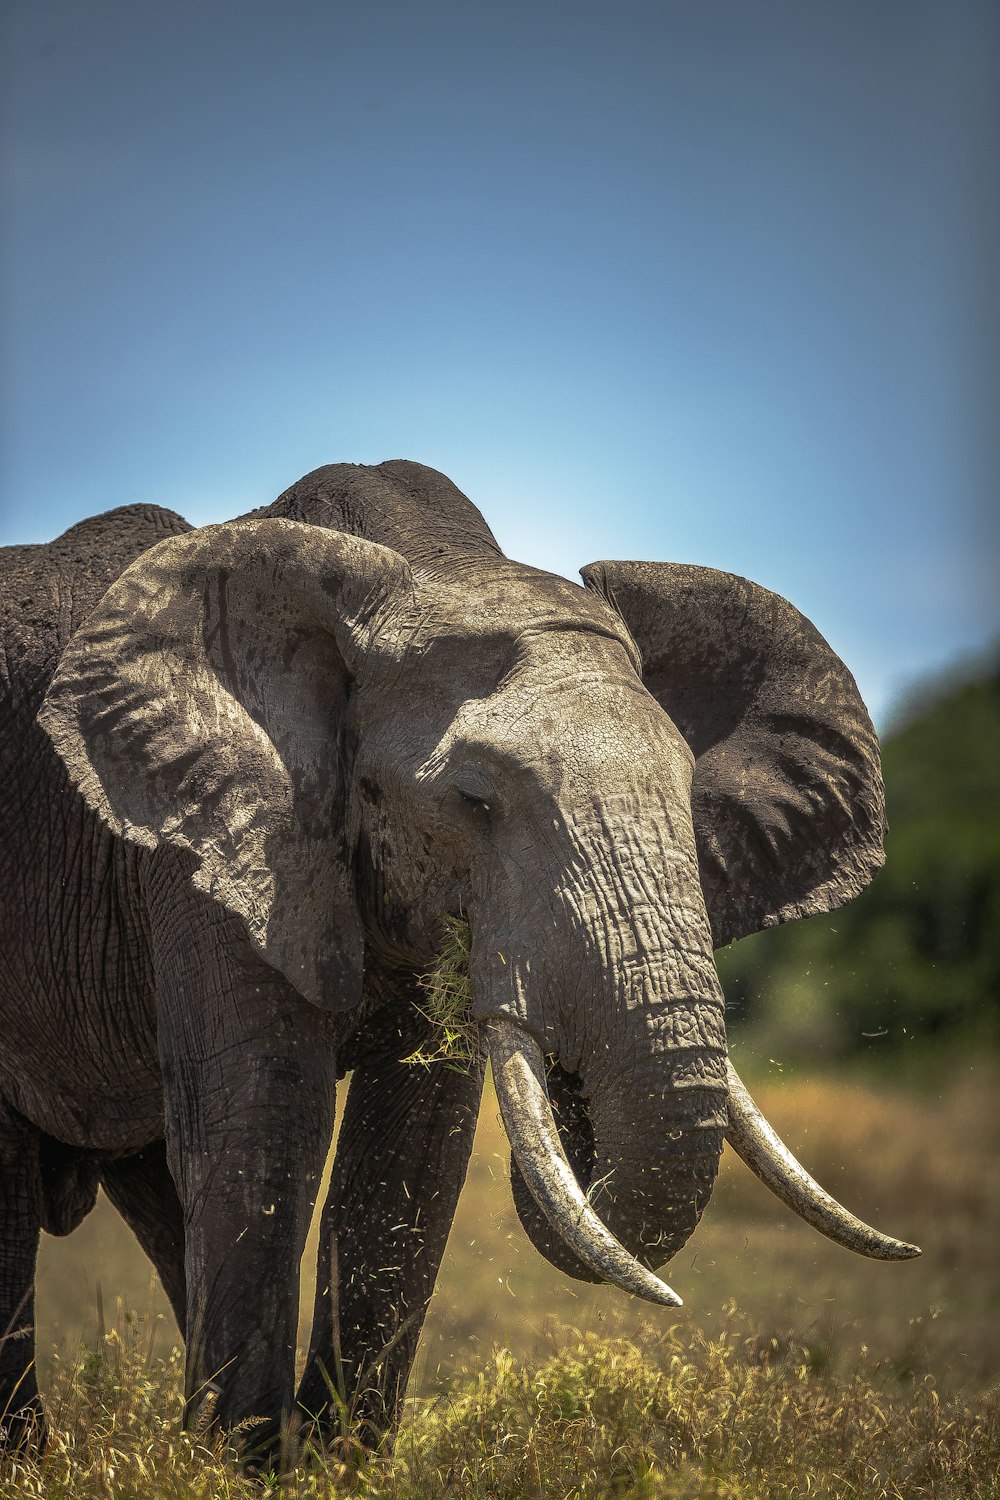 grey elephant under blue sky during daytime photo – Free Mammal Image on  Unsplash